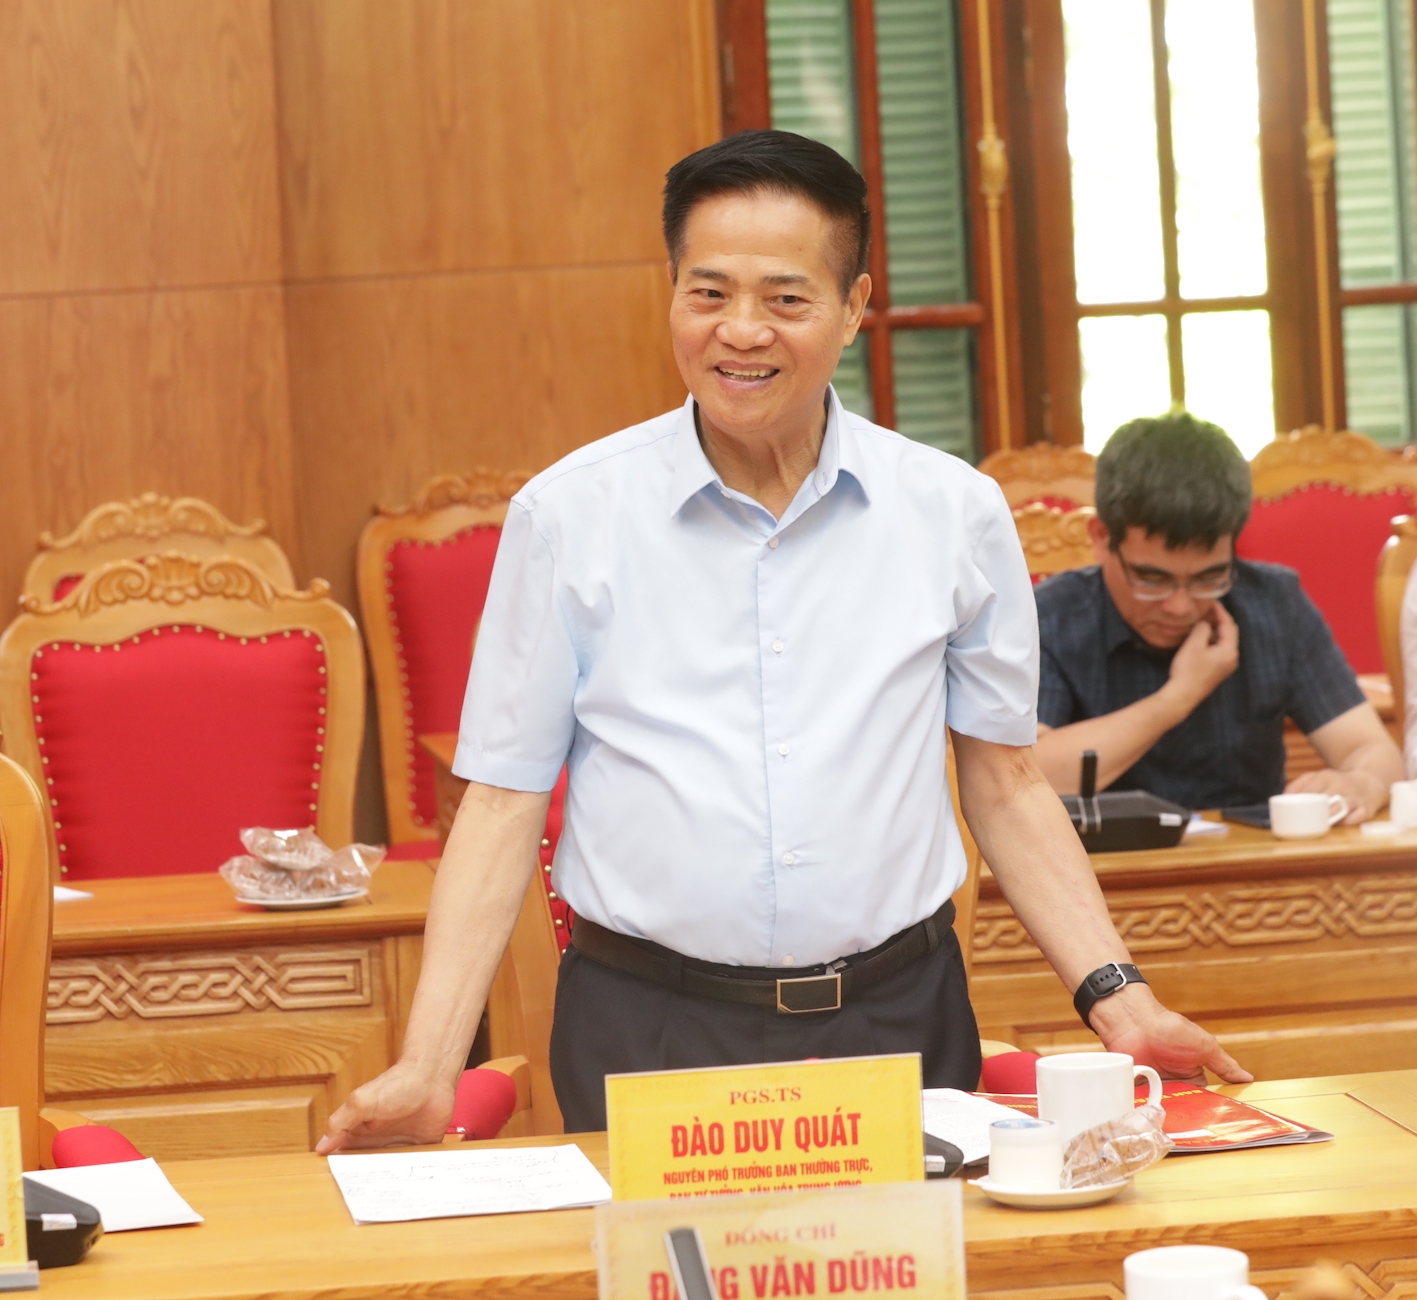 PGS. TS. Đào Duy Quát, nguyên Phó Trưởng ban Thường trực, Ban Tư tưởng – Văn hoá Trung ương phát biểu.